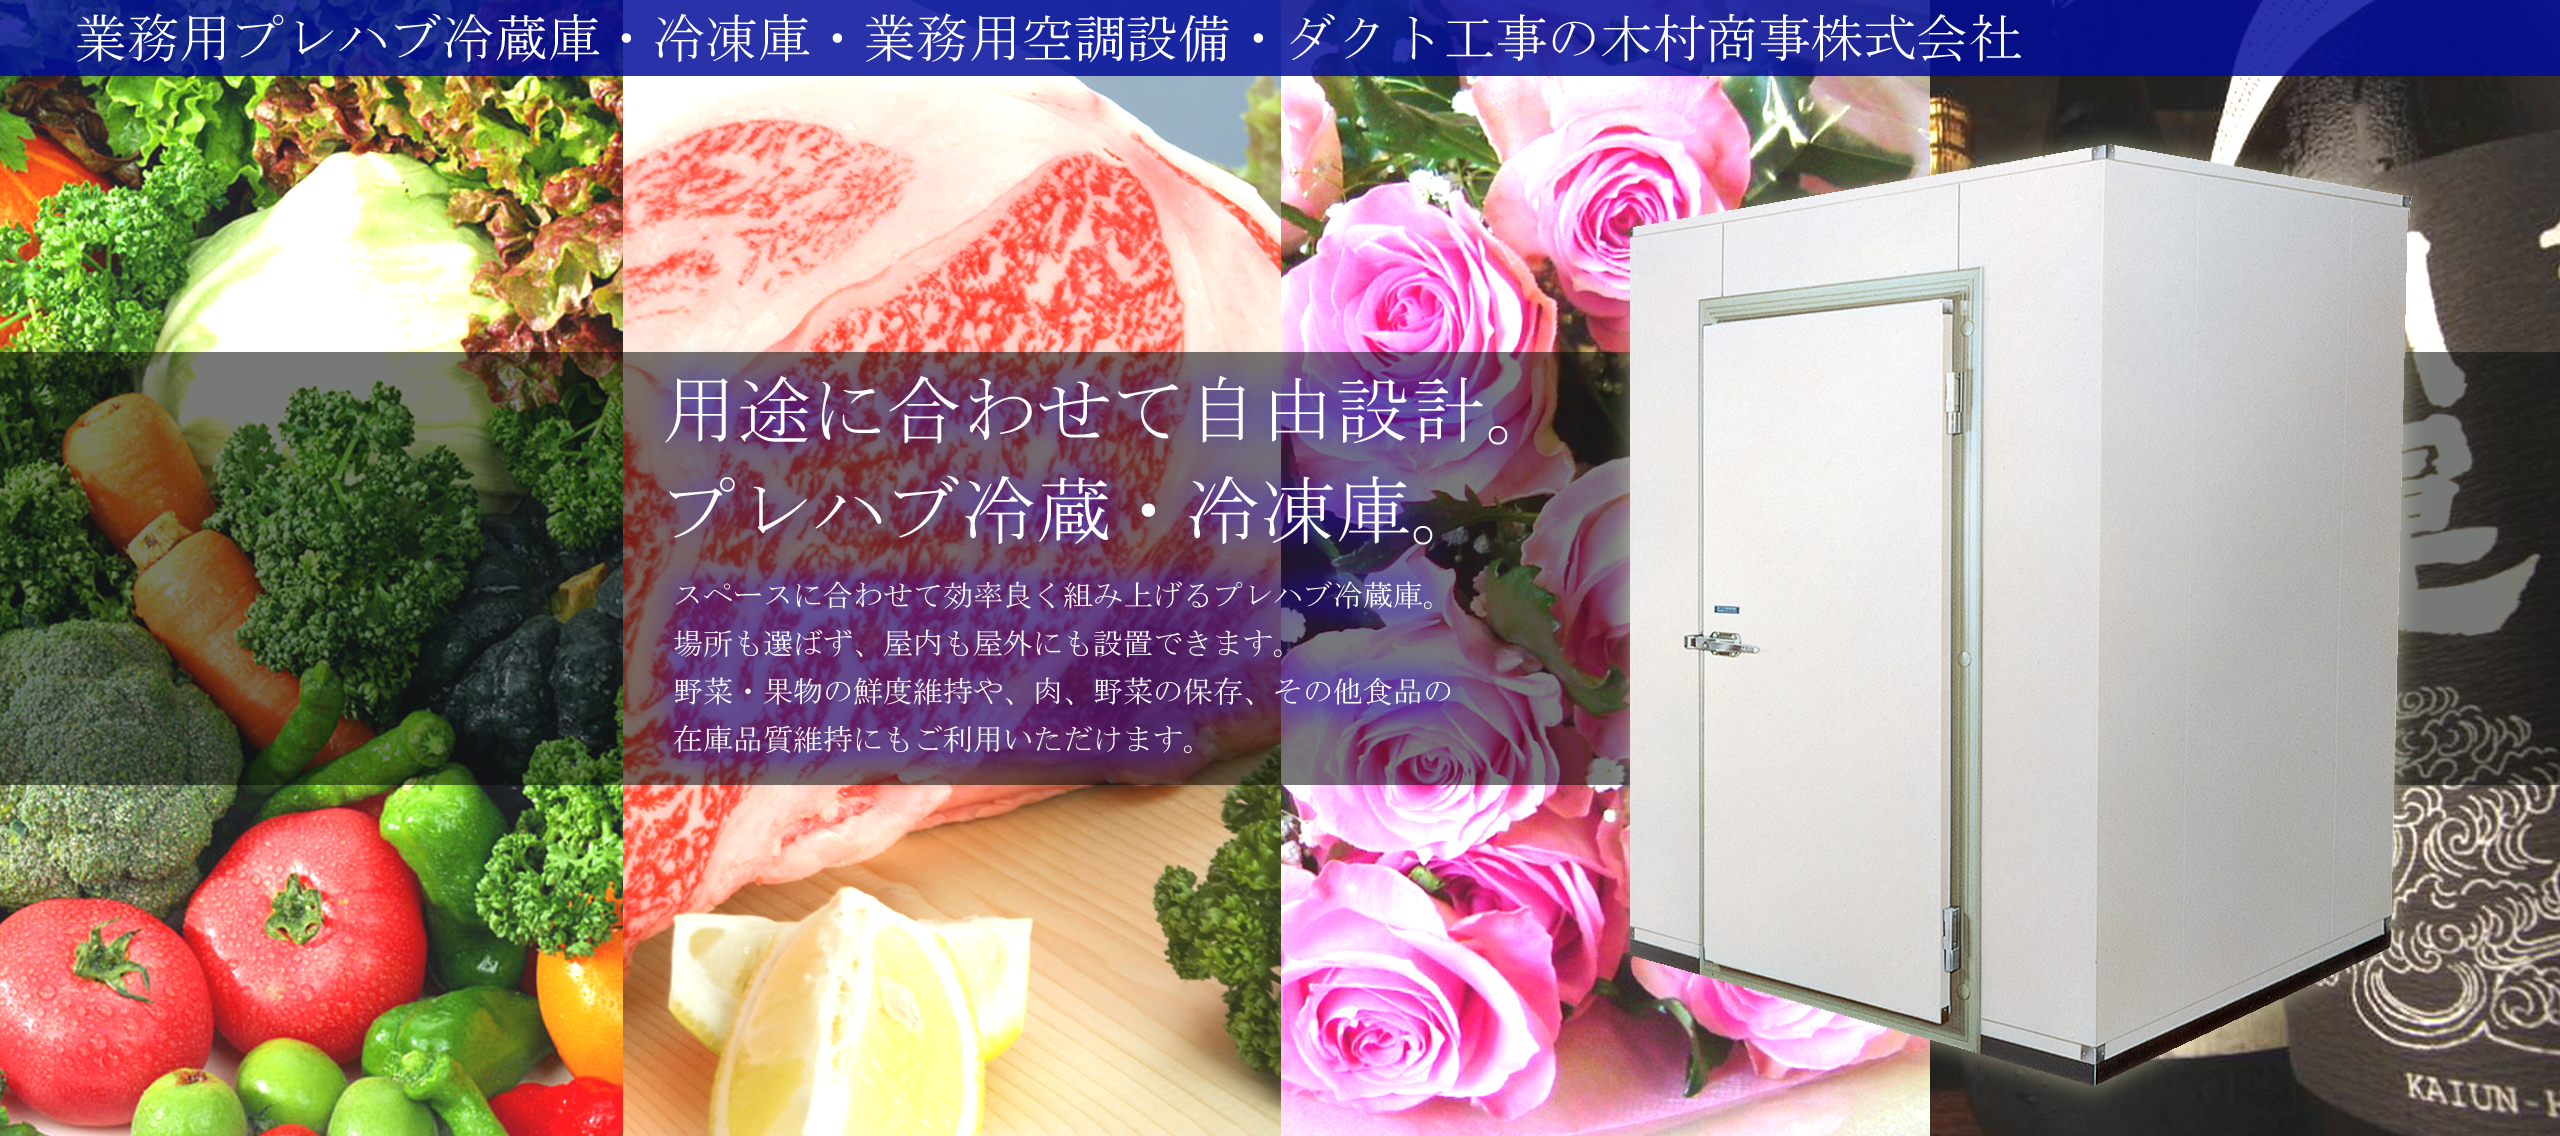 埼玉でプレハブ冷蔵庫の設置をお考えなら木村商事へ